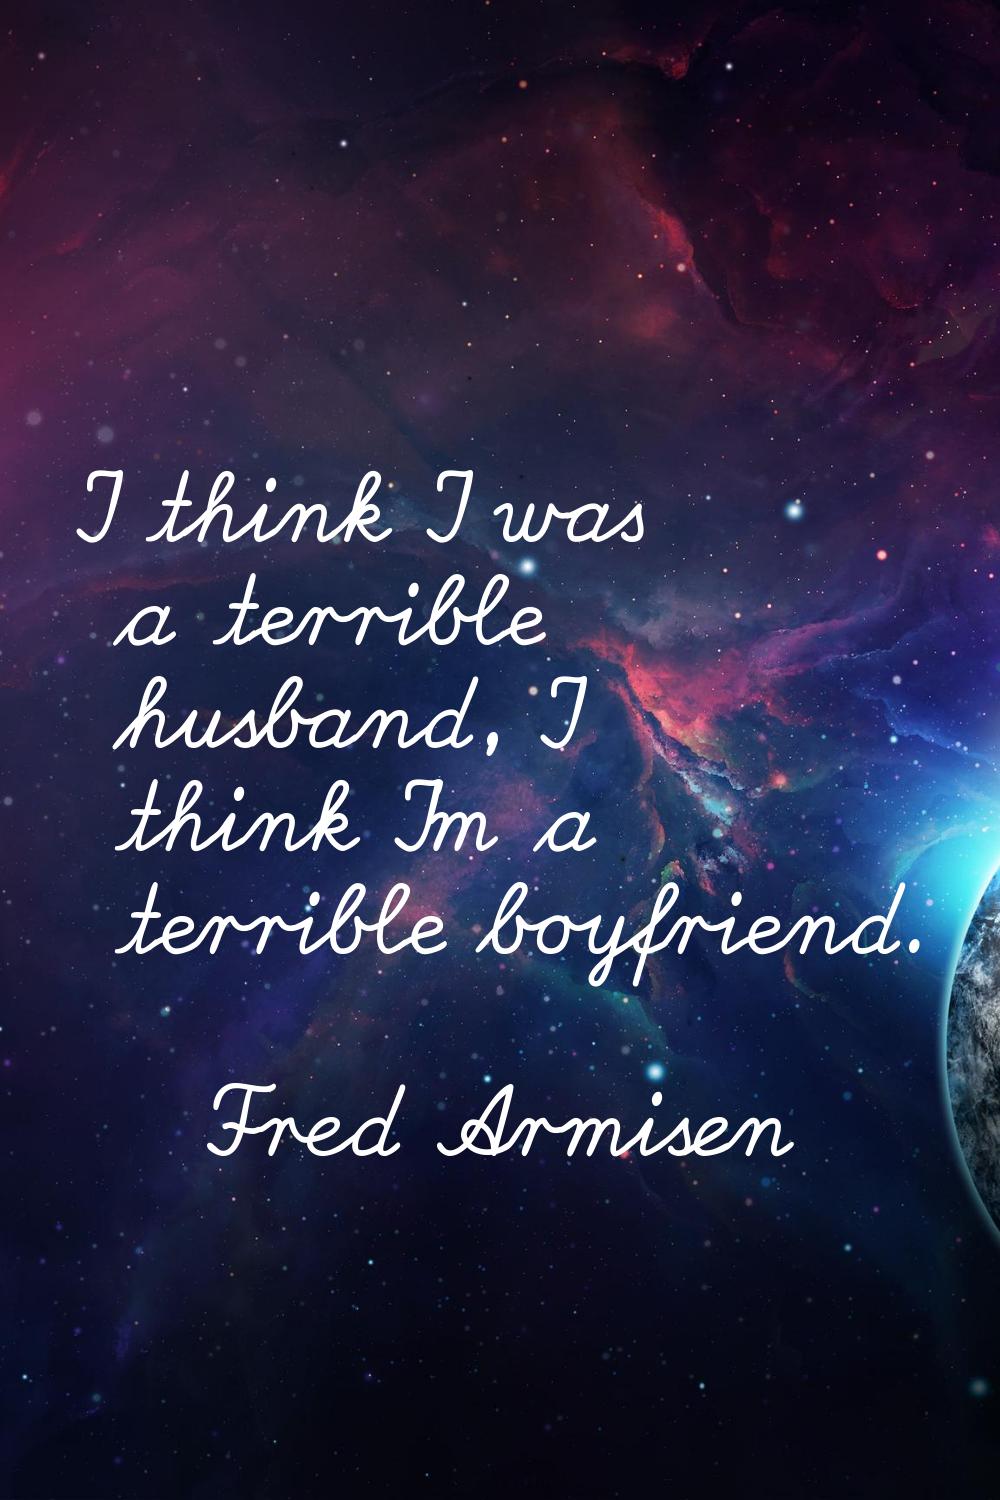 I think I was a terrible husband, I think I'm a terrible boyfriend.